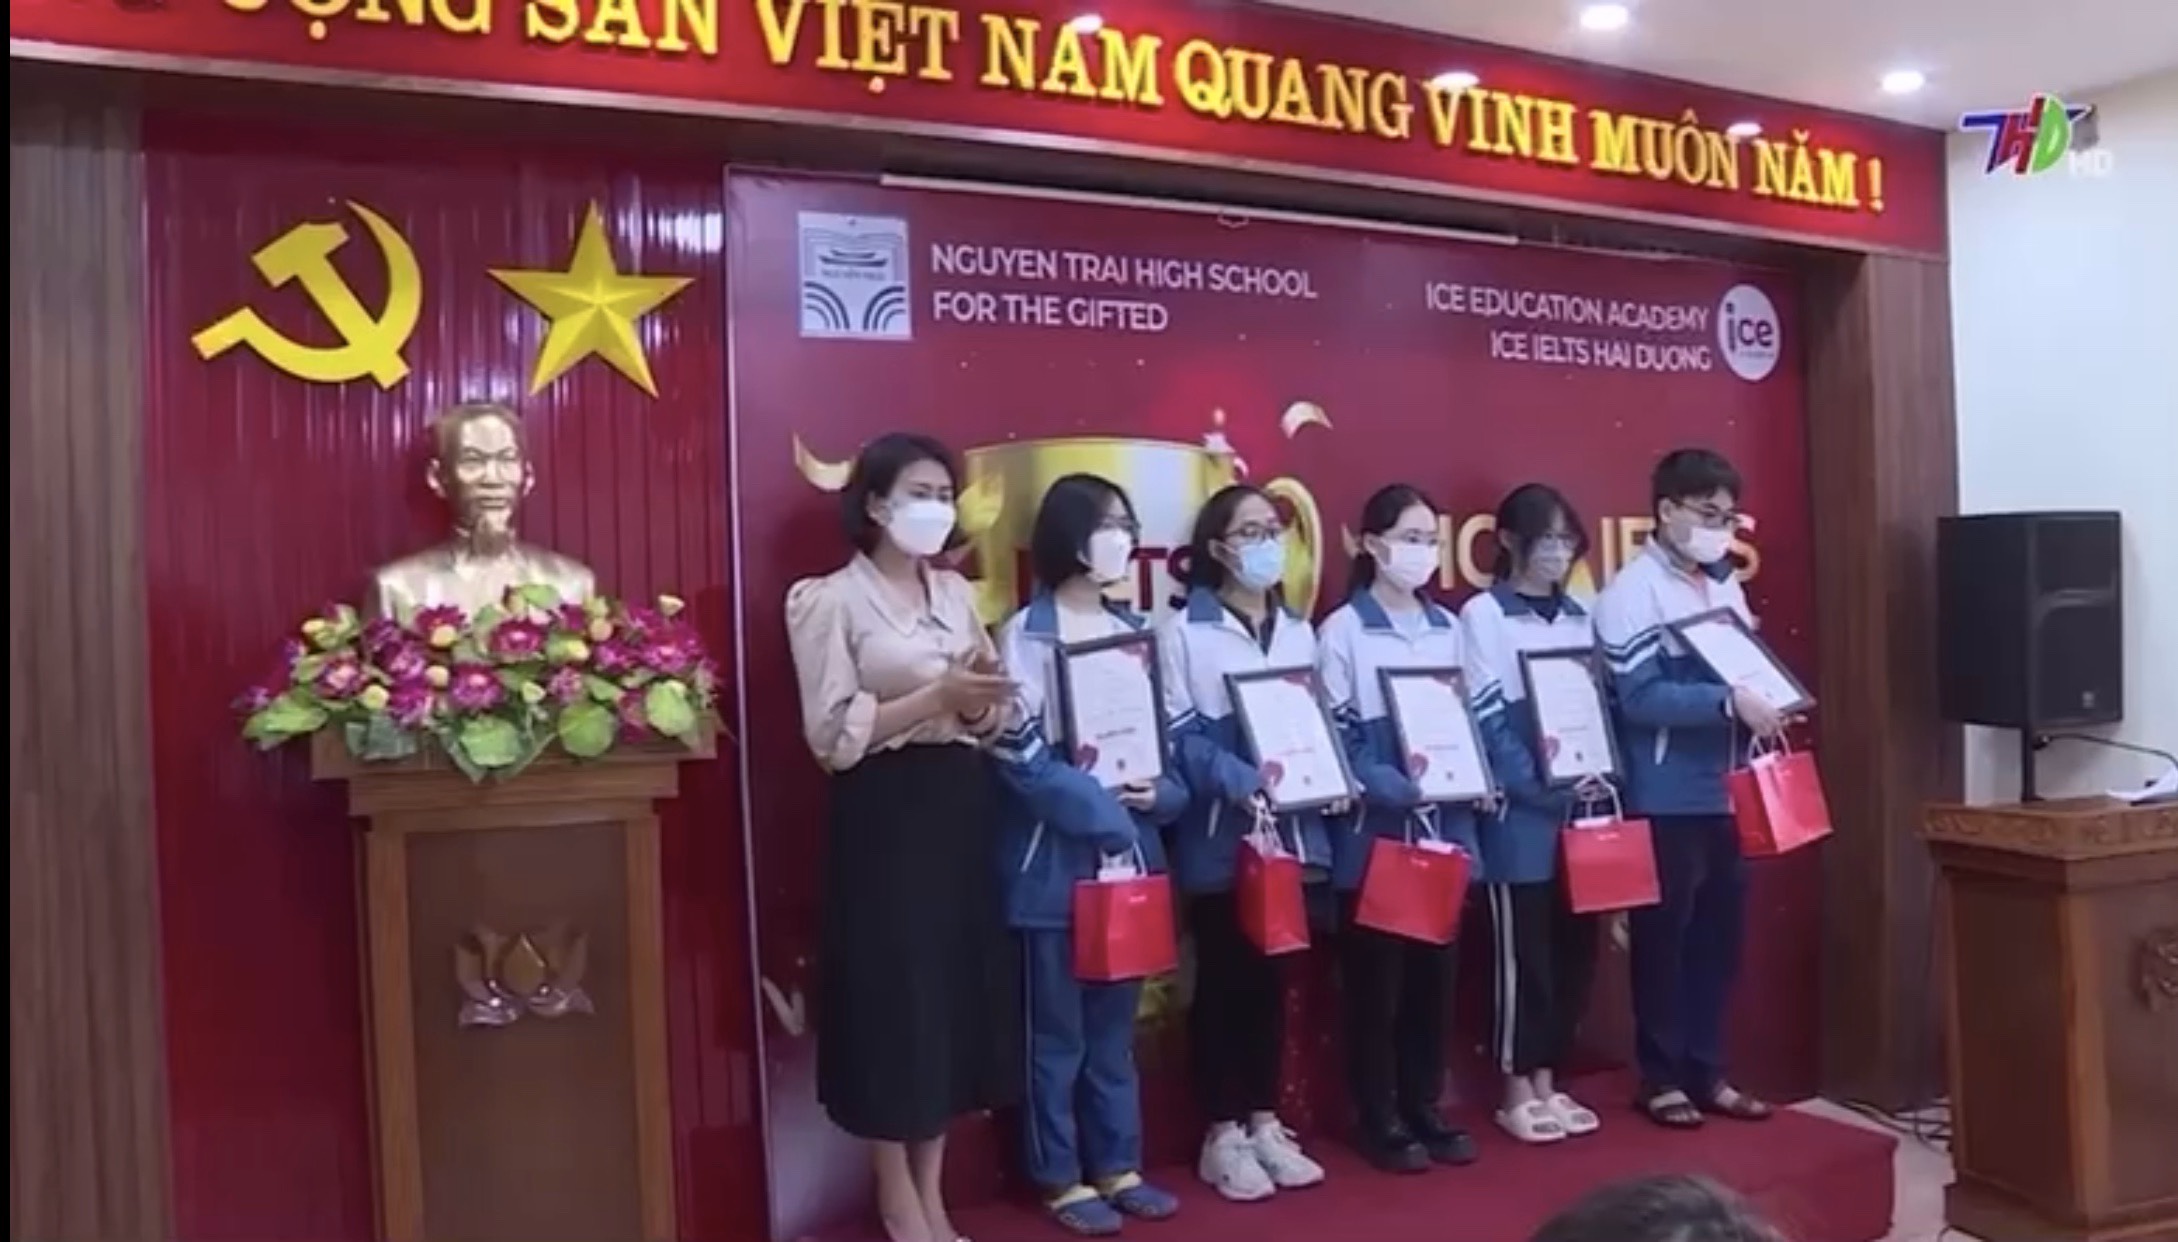 Học viện đào tạo ICE trao học bổng và tặng quà cho các HS chuyên Nguyễn Trãi. Năm học: 2021-2022